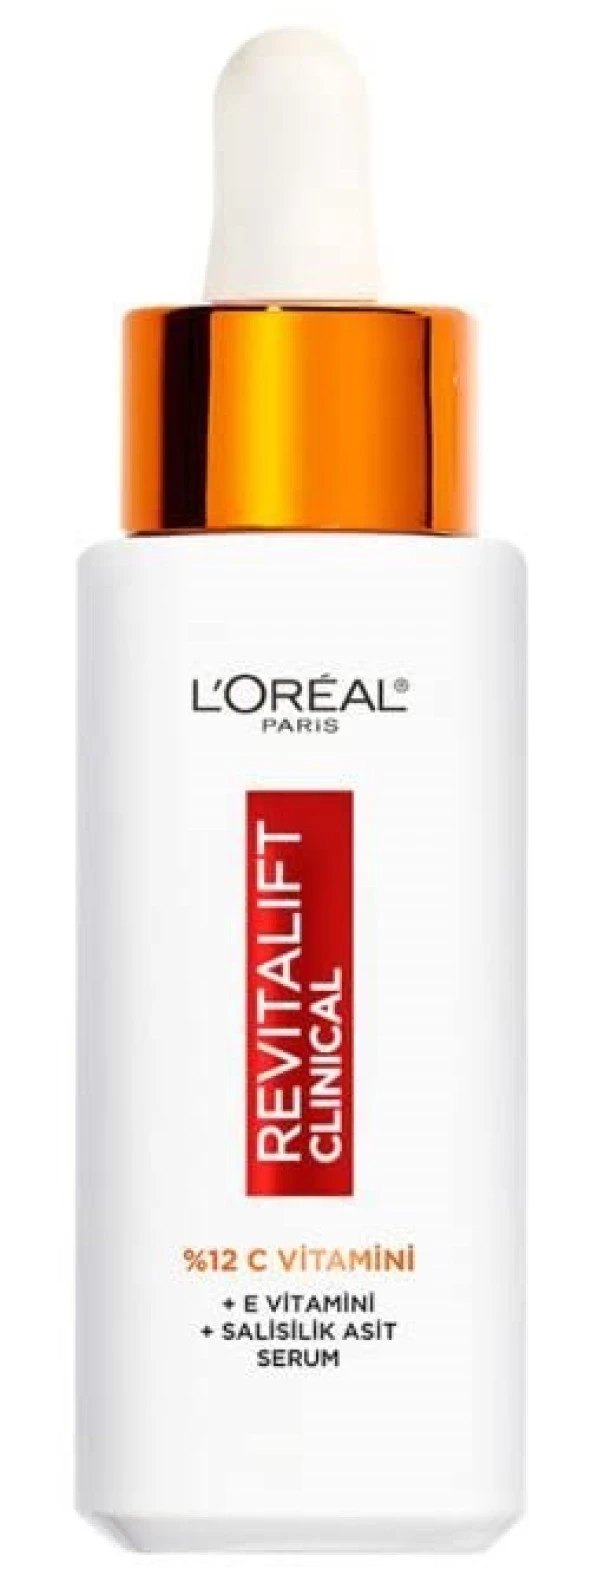 L'Oréal Paris Revitalift Clinical%12 Saf C Vitamini Aydınlatıcı Serum